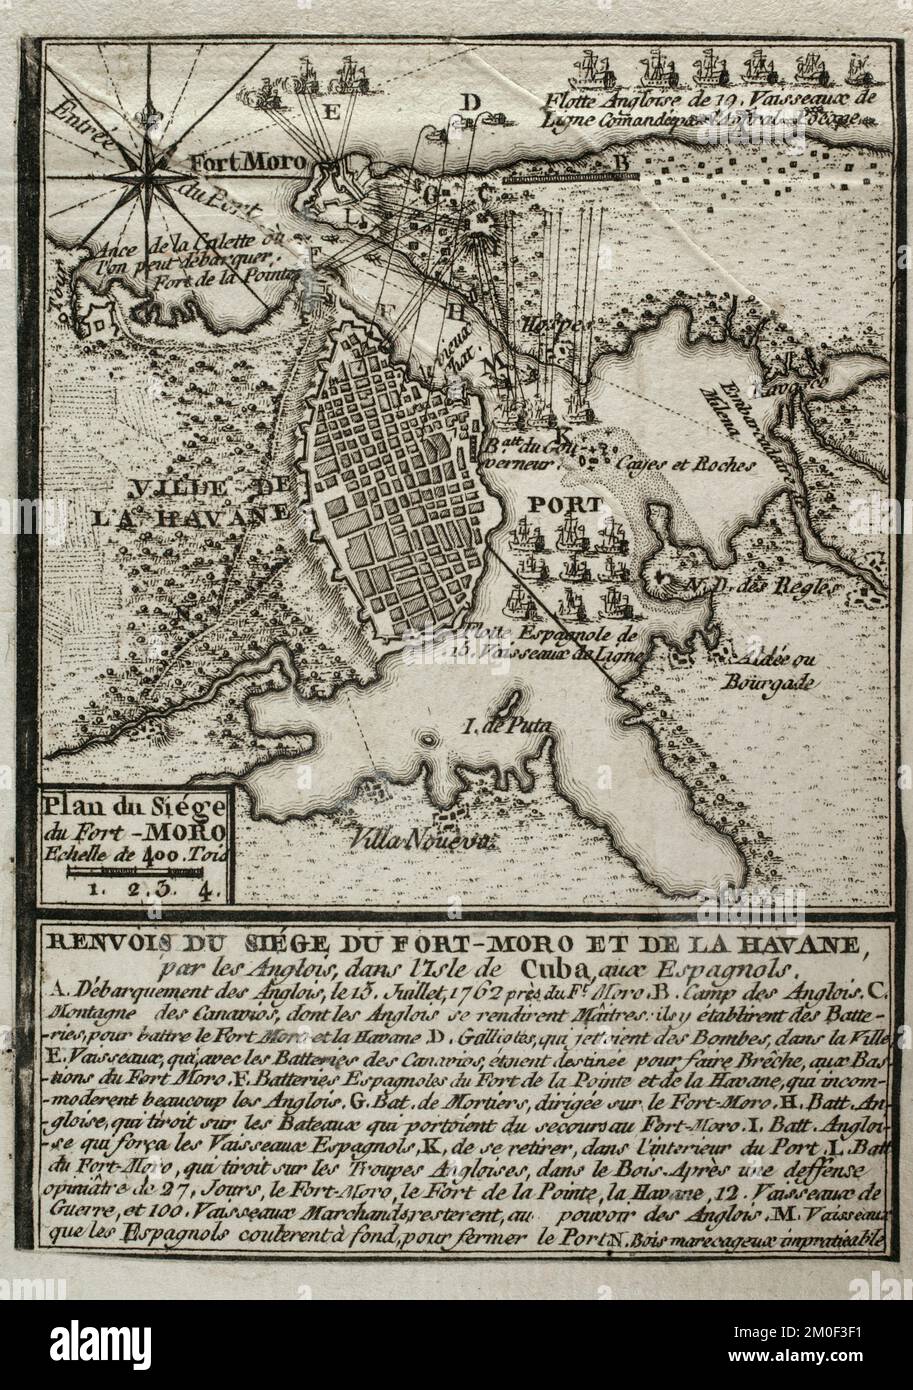 7 Jahre Krieg (1756-1763). Karte der Belagerung von Fort Morro, 1762. Insel Kuba. Gefangennahme von Havanna. Die englischen Truppen griffen die spanische Verteidigung an, als sie in einen Konflikt mit der spanischen Krone gerieten, nach dem Bündnis Spaniens mit Frankreich, Englands Feind. Die britischen Truppen landeten am 13. Juli 1762 auf der Insel und eroberten sie im August. Veröffentlicht im Jahr 1765 vom Kartografen Jean de Beaurain (1696-1771) als Illustration seiner Großen Karte Deutschlands mit den Ereignissen, die während des Siebenjährigen Krieges stattfanden. Gravur. Französische Ausgabe, 1765. Militärhistorische Bibliothek von Barcelona (Bibliote Stockfoto